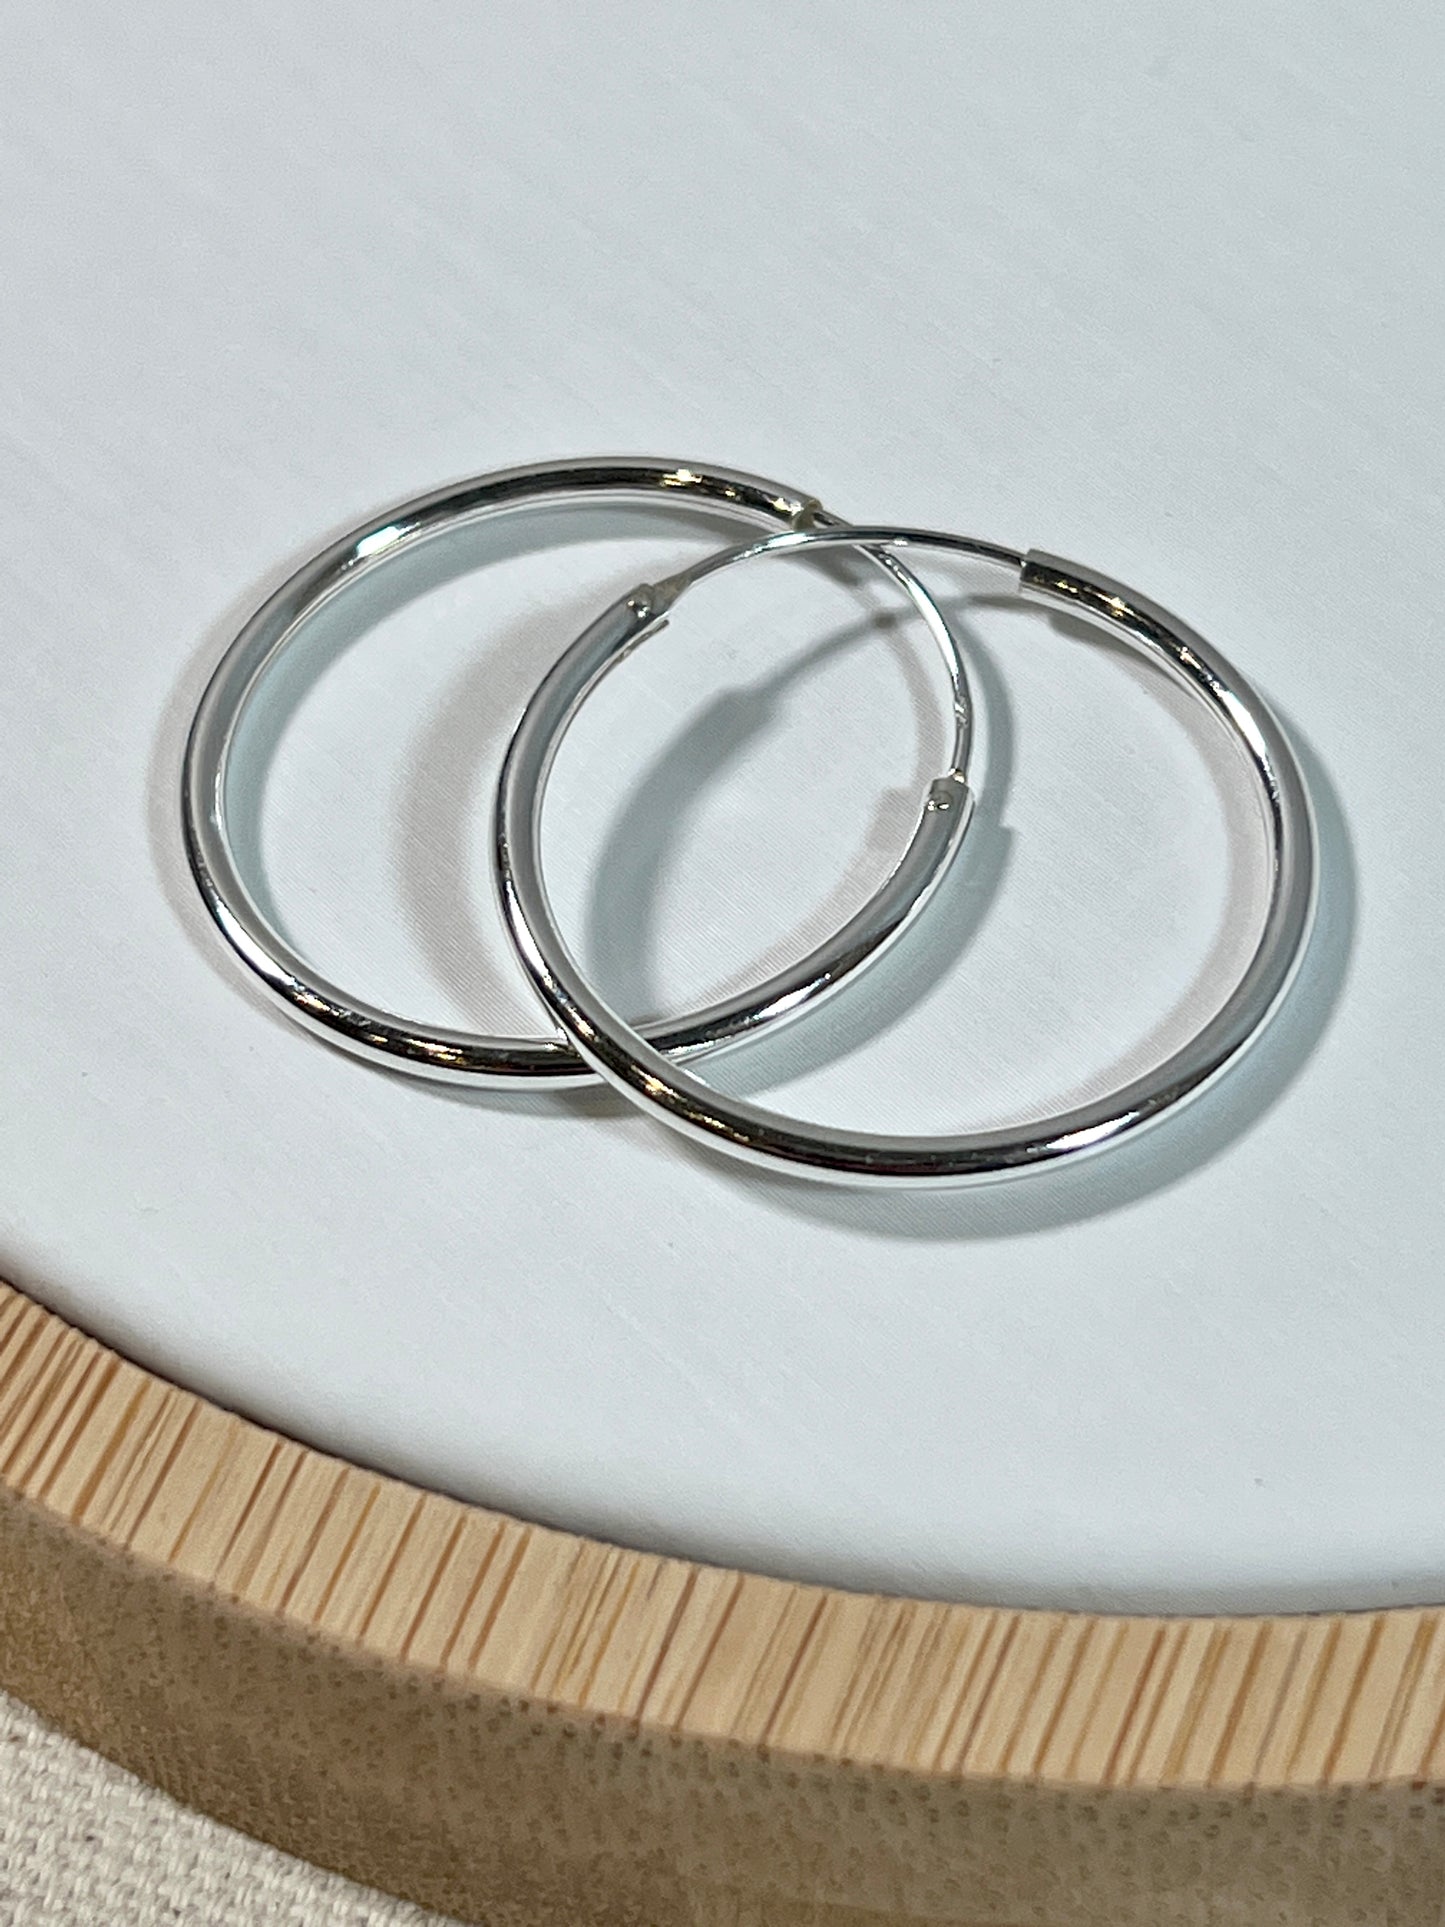 A pair of Super Silver Infinity Hoop 2mm x 30mm earrings.